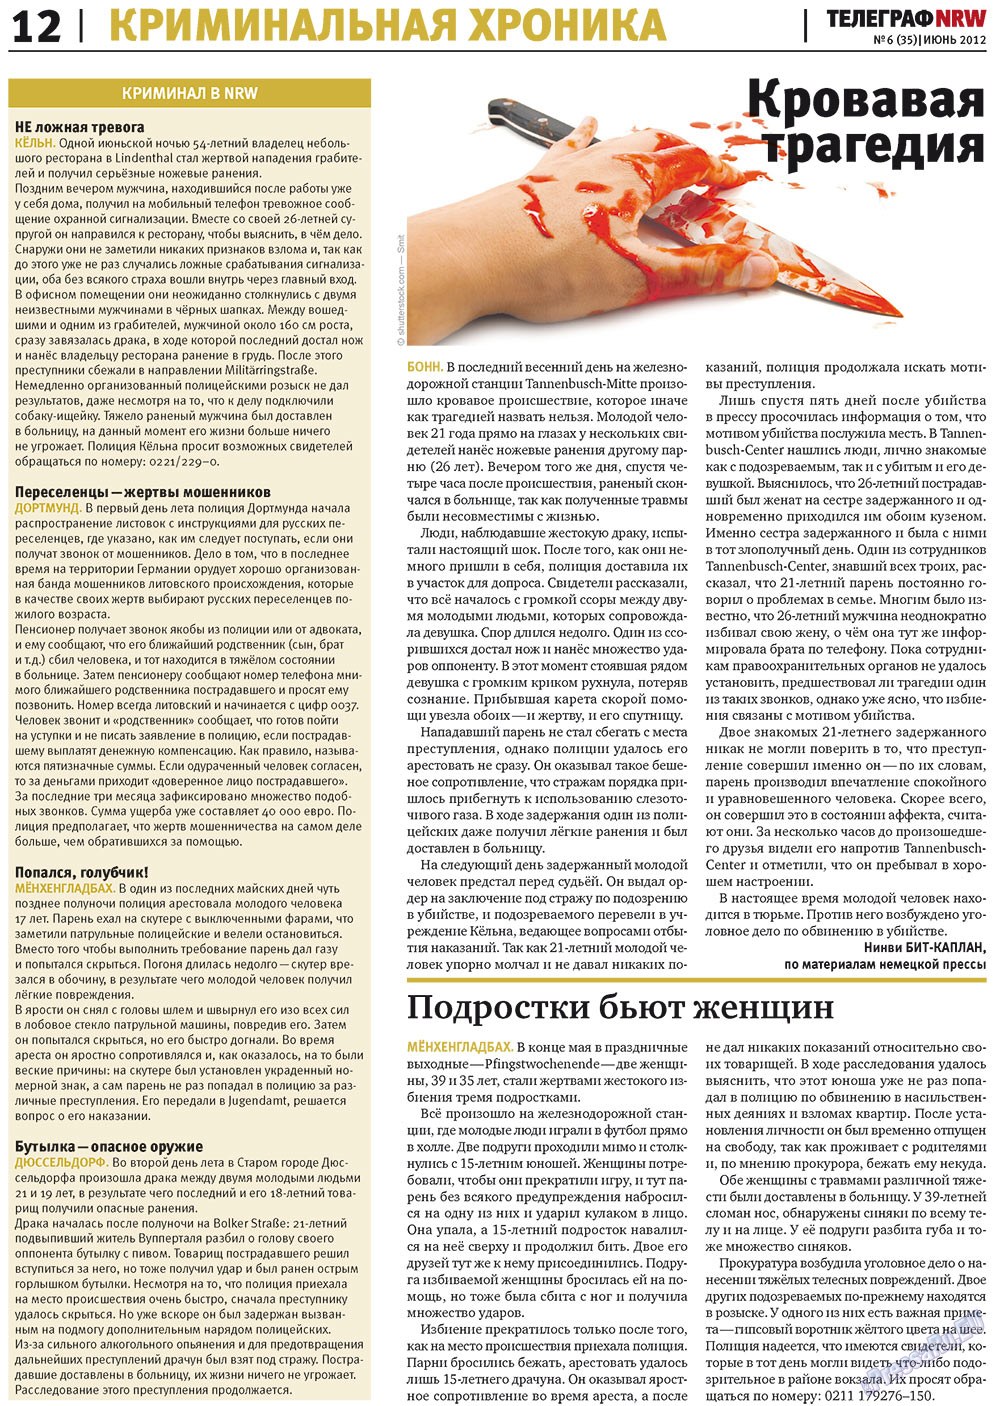 Телеграф NRW (газета). 2012 год, номер 6, стр. 12